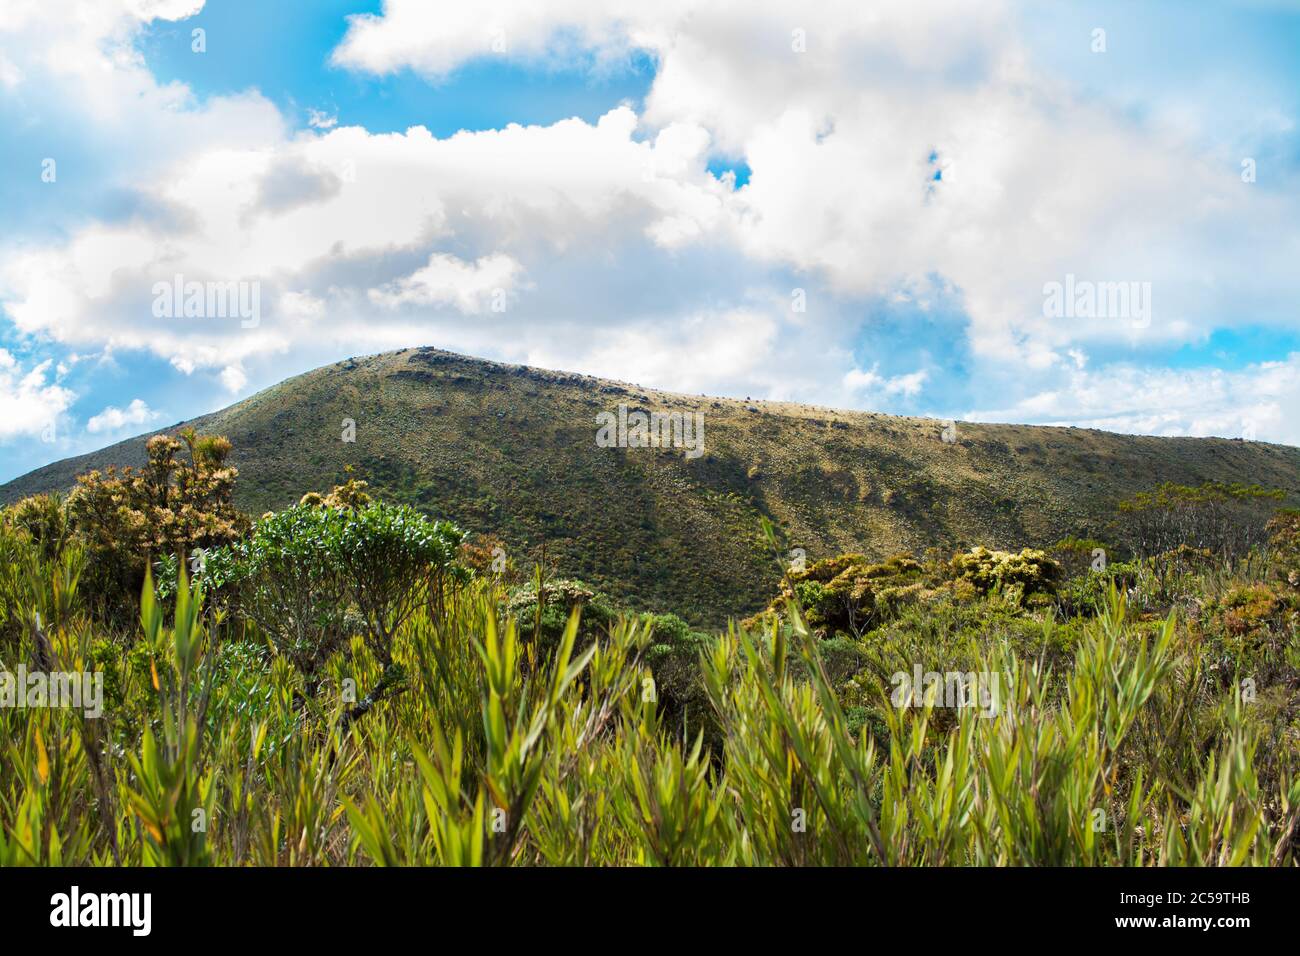 Montagna di Paramo. Una cima di montagna in un paramo con cielo blu Foto Stock